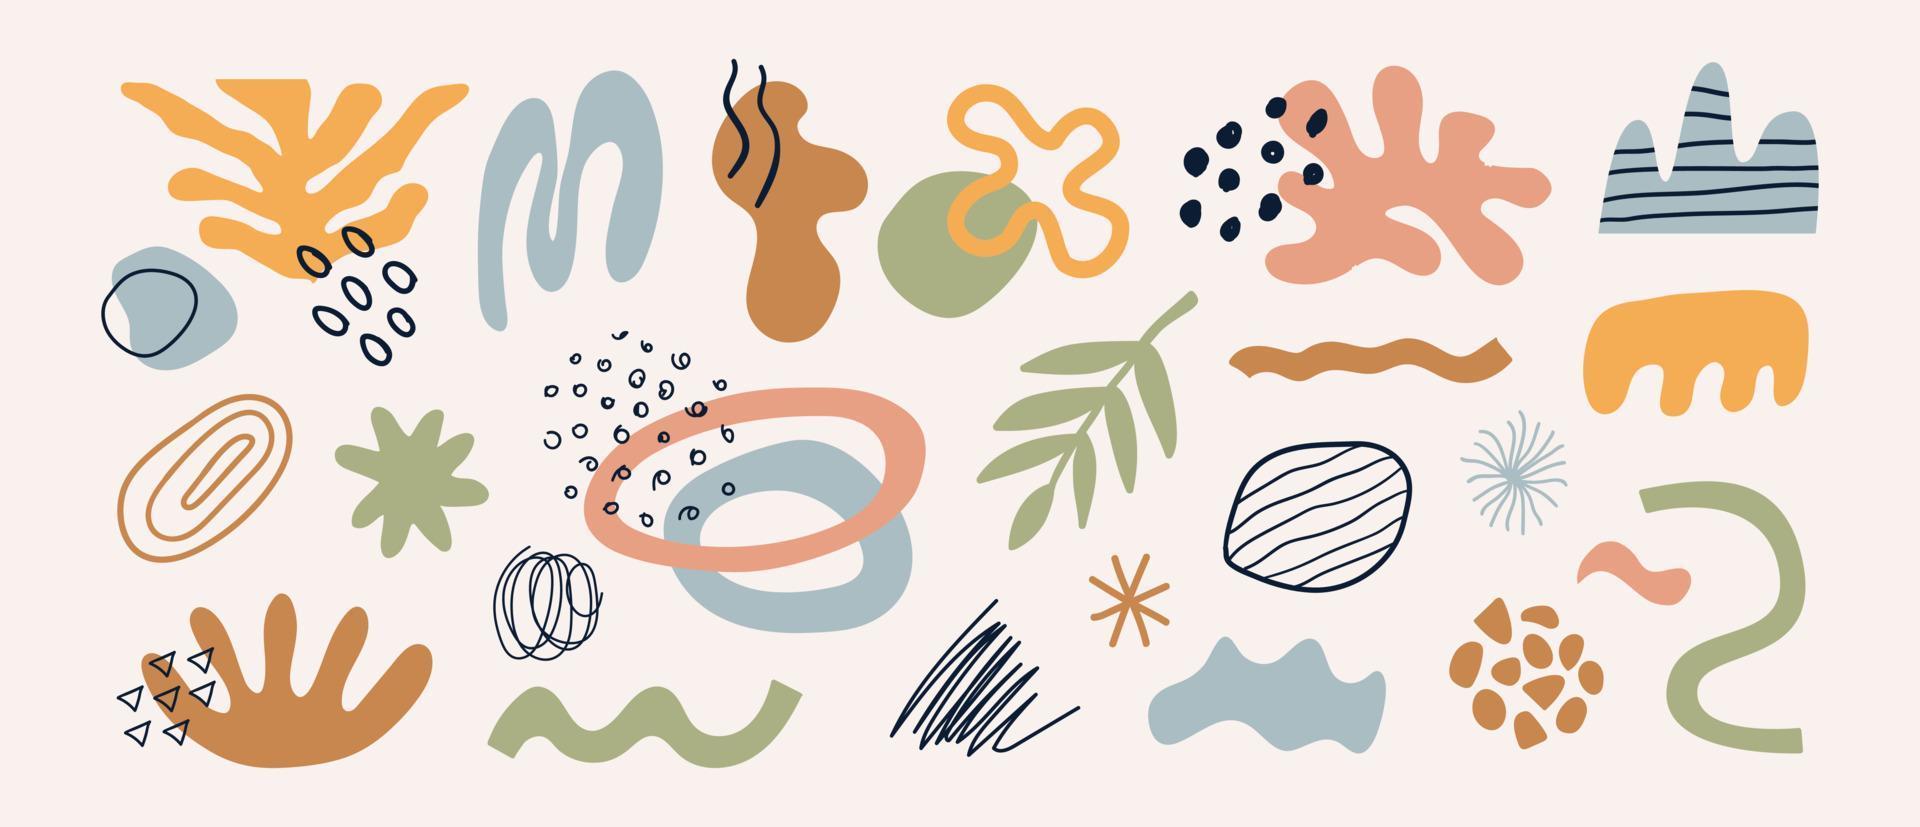 conjunto moderno de diferentes formas dibujadas a mano, plantas, elementos tropicales y objetos de garabato. diseño vectorial de moda contemporáneo abstracto. ilustración orgánica natural vector